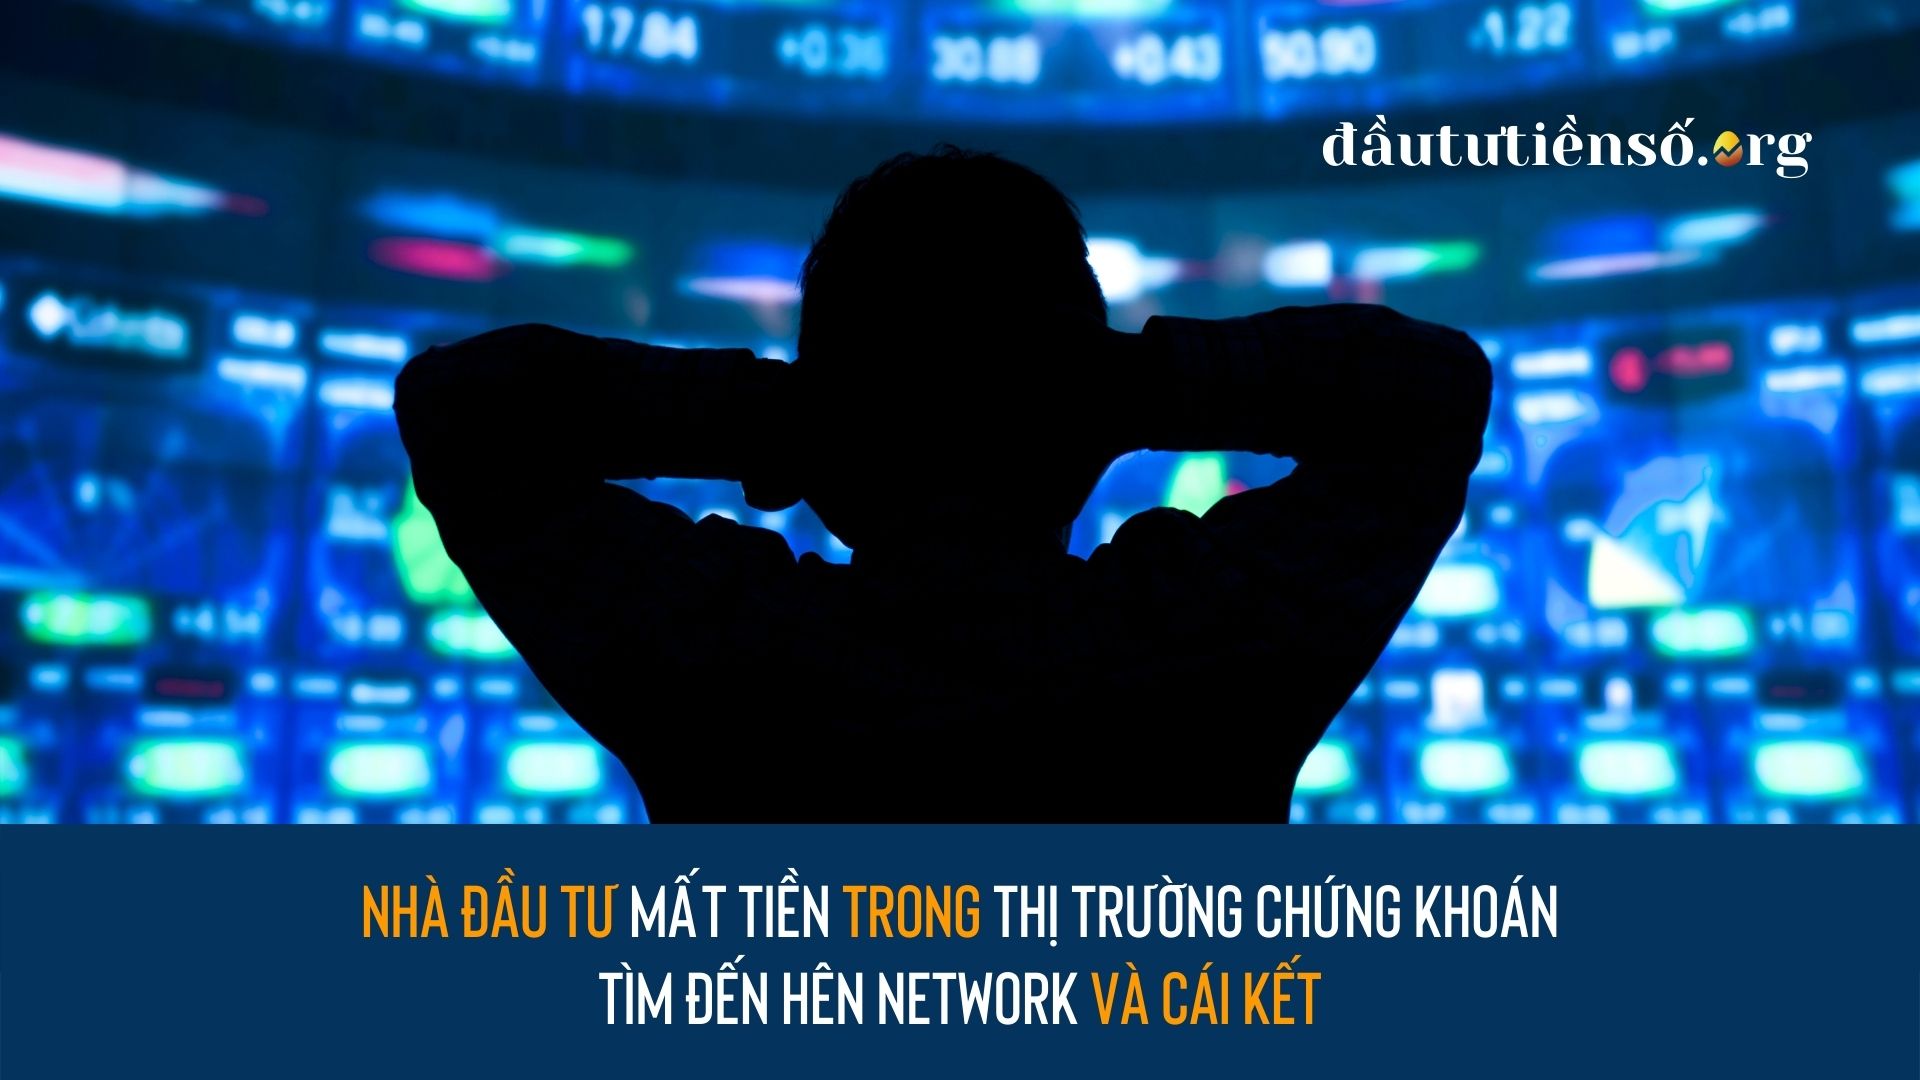 Nhà đầu tư mất tiền trong thị trường chứng khoán tìm đến Hên Network và cái kết